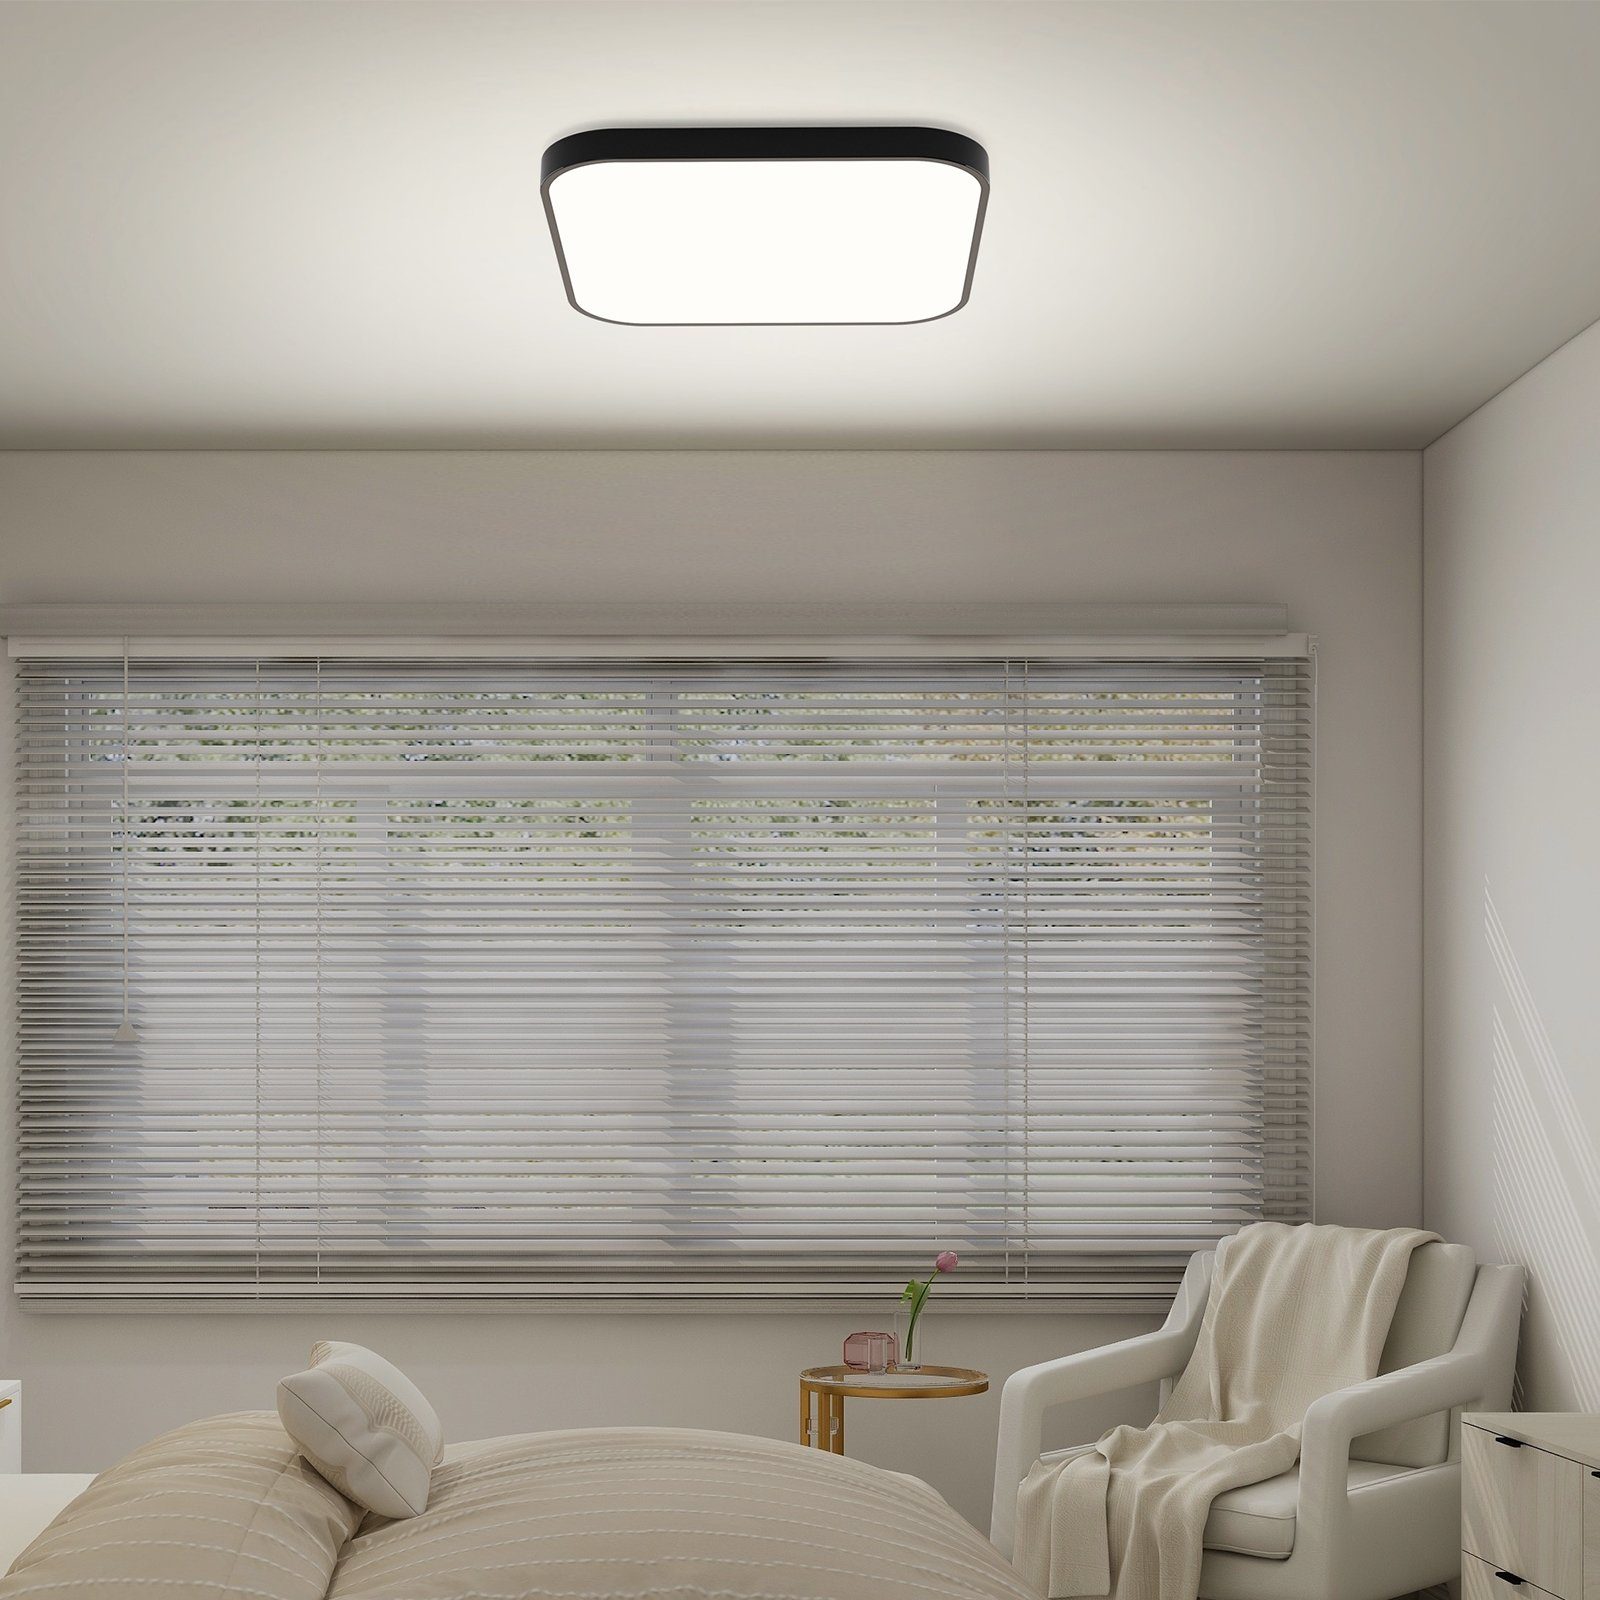 Nettlife LED Deckenleuchte Panel Flach Küche Warmweiß, Decklampe integriert, IP44, wasserdicht, Schlafzimmer Schwarz Wohnzimmer 27cm für fest 19W LED